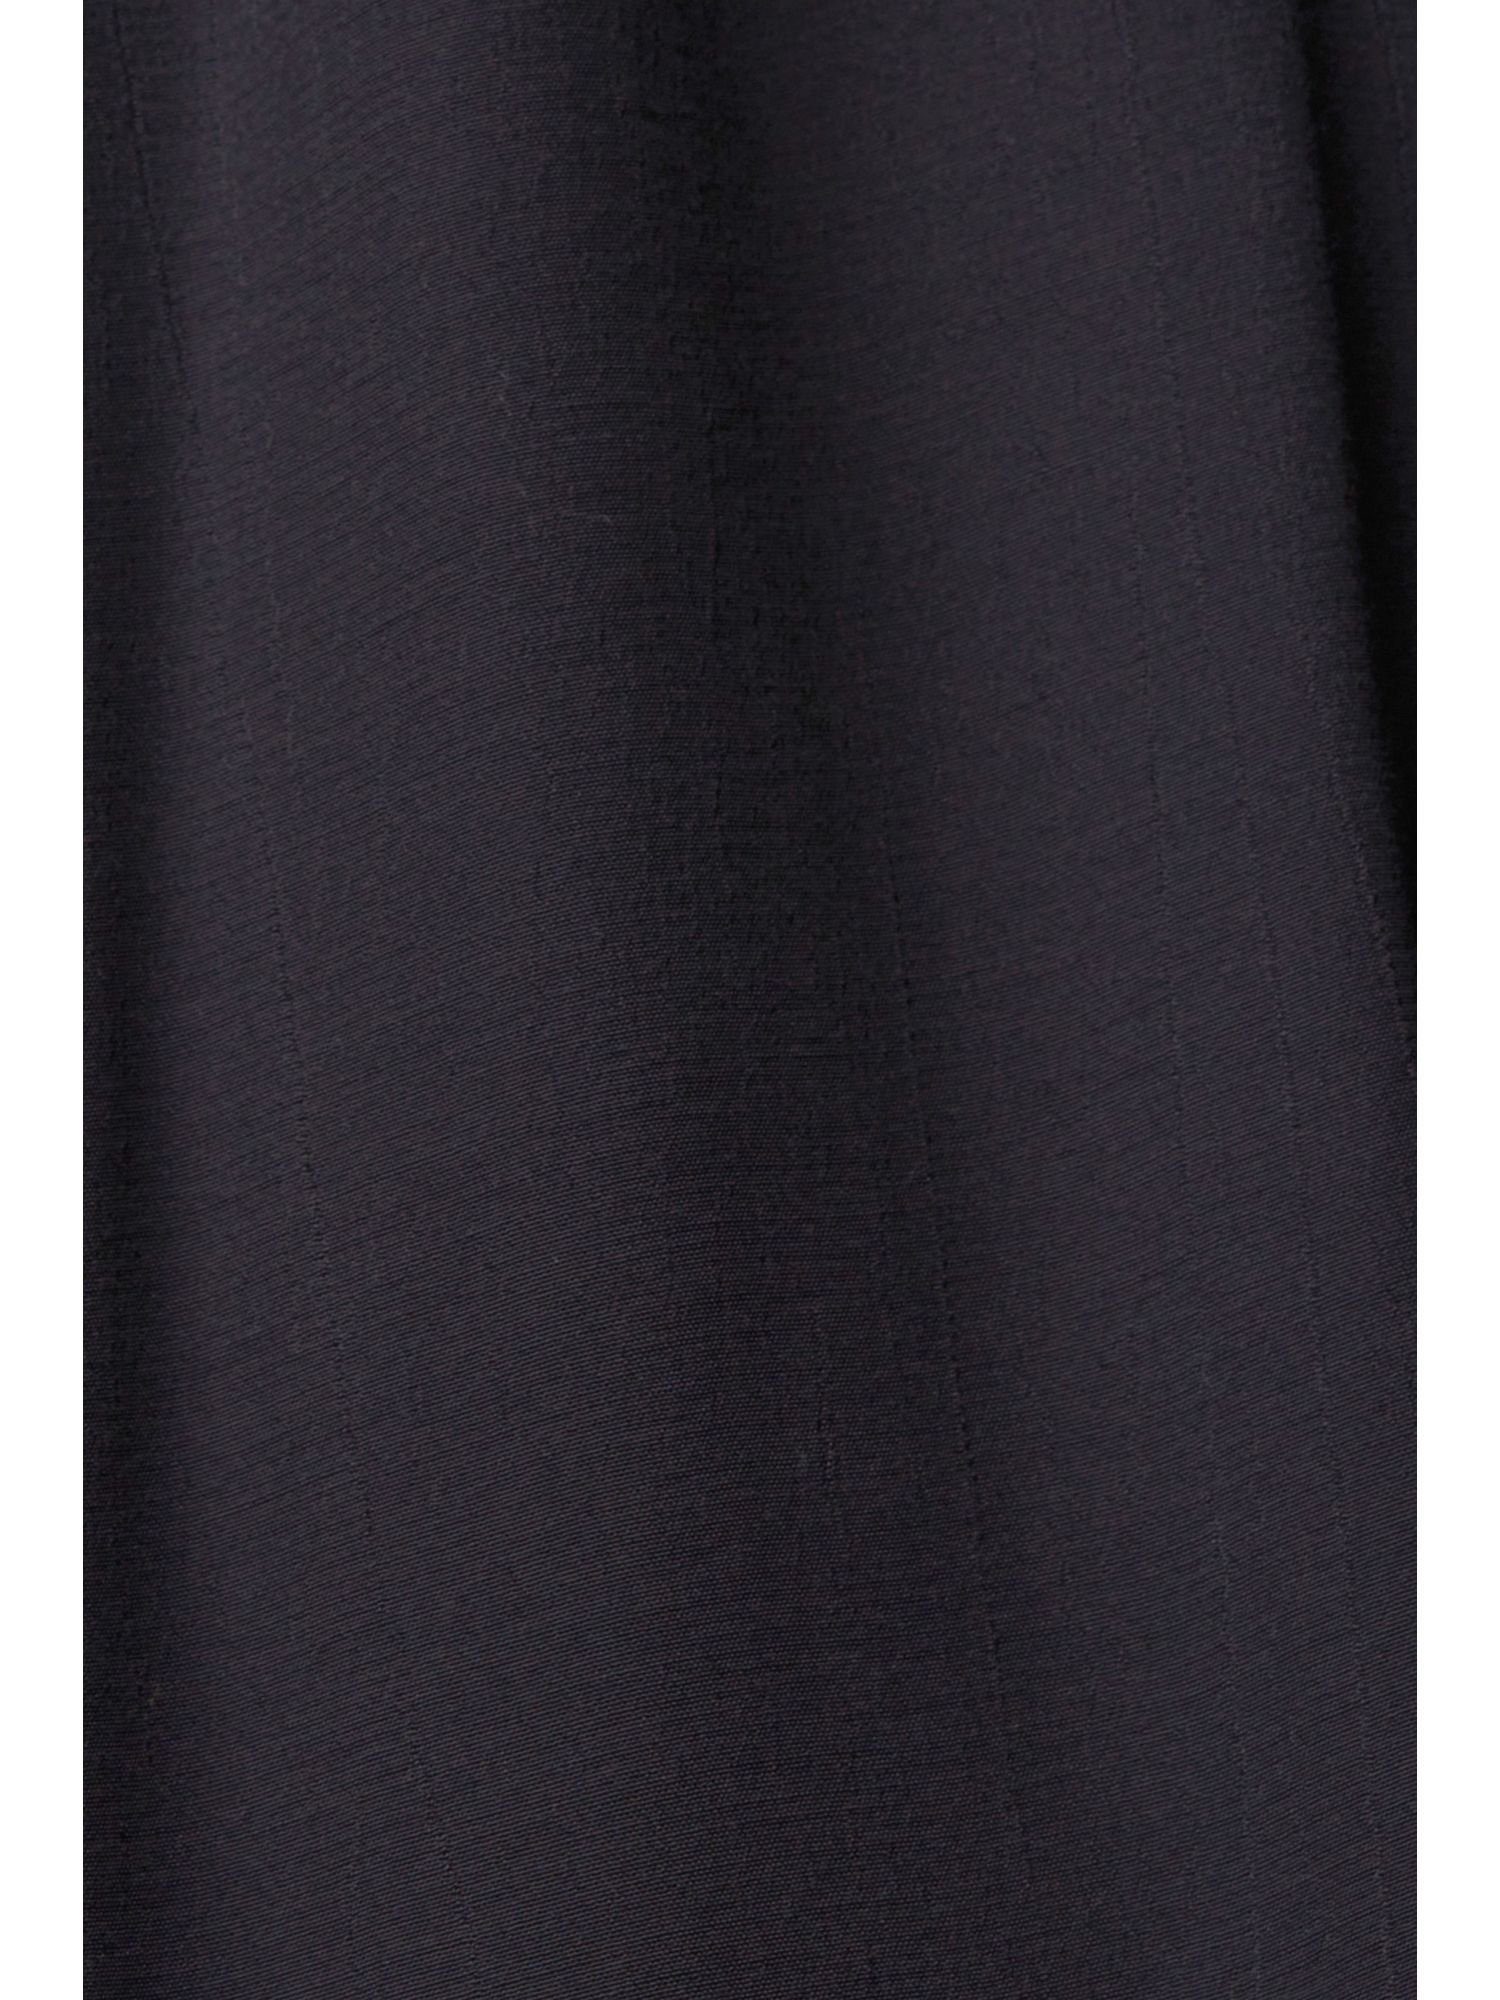 Esprit Spitzendetails edc BLACK mit by Minikleid Kleid